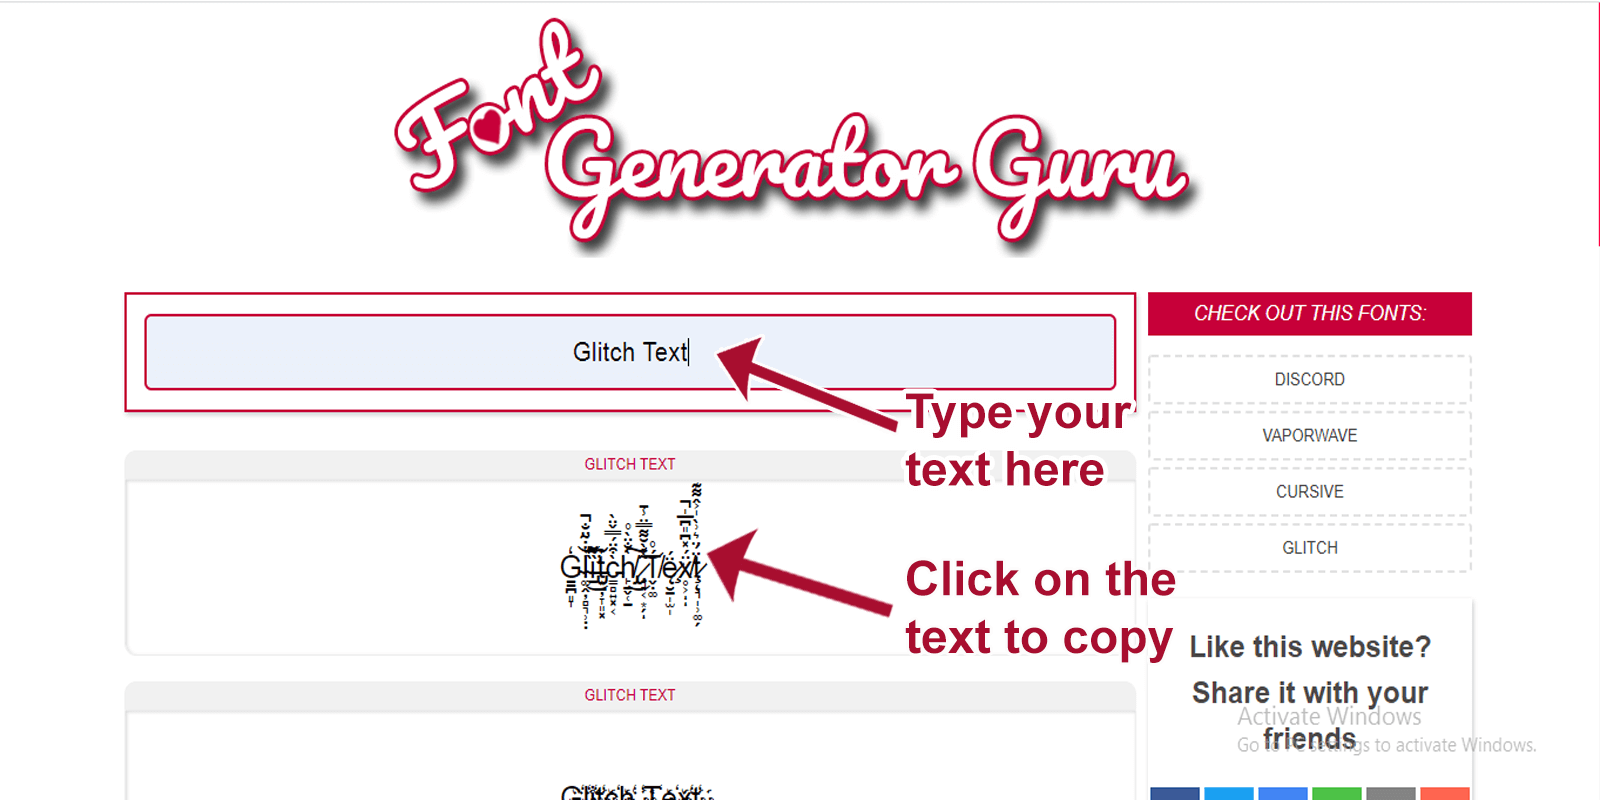 Glitch Text Font Generator